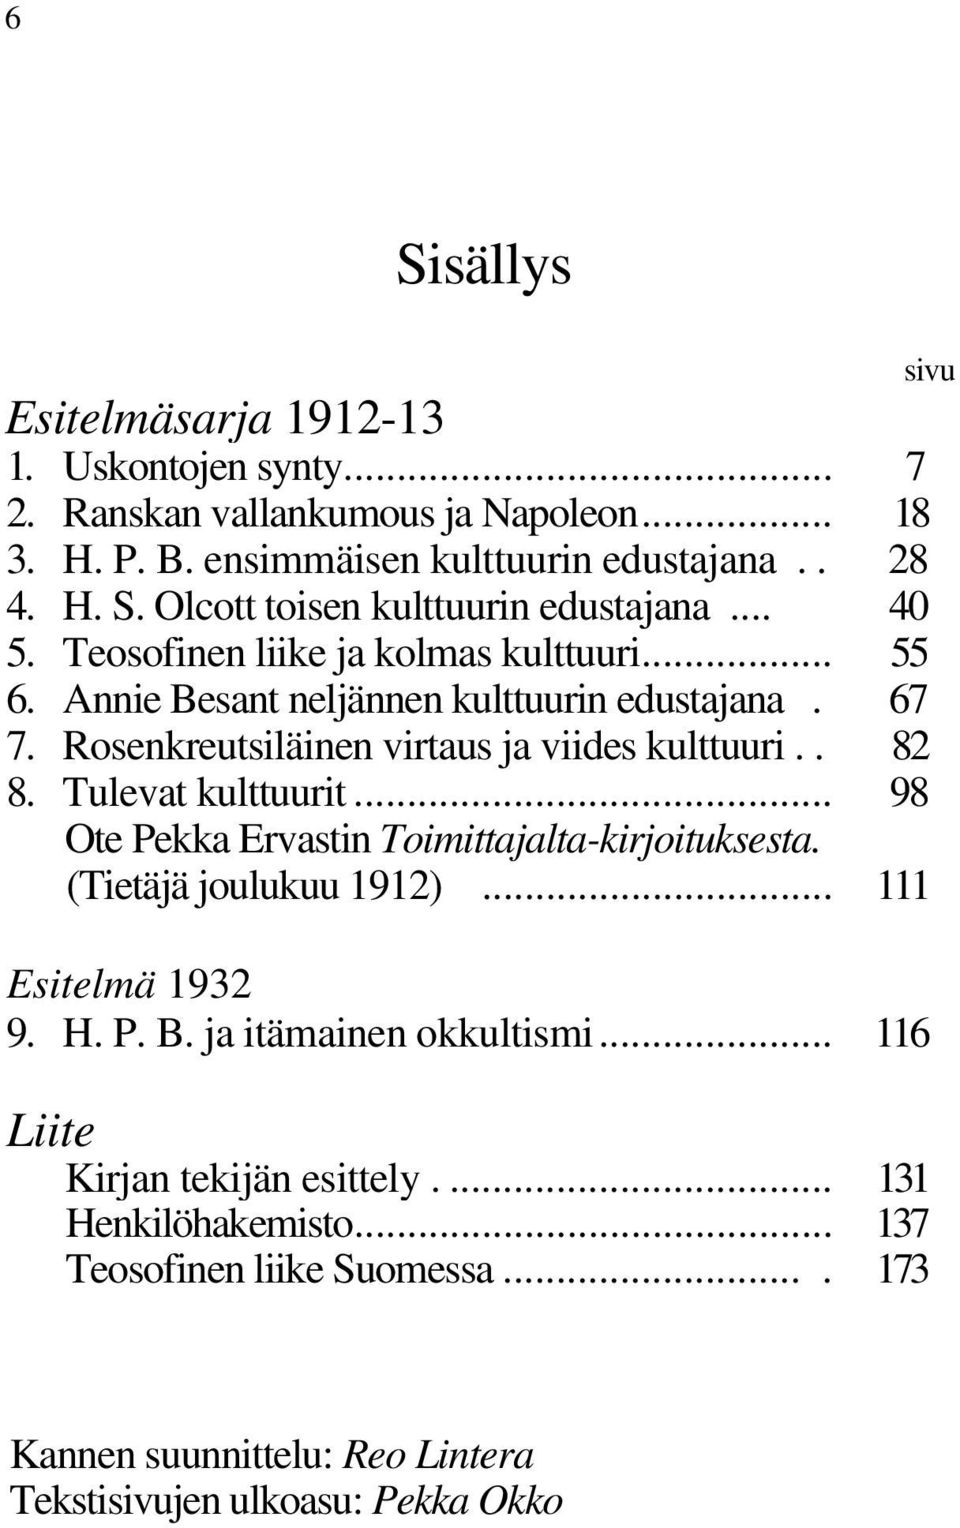 Tulevat kulttuurit... 98 Ote Pekka Ervastin Toimittajalta-kirjoituksesta. (Tietäjä joulukuu 1912)... 111 Esitelmä 1932 9. H. P. B. ja itämainen okkultismi.